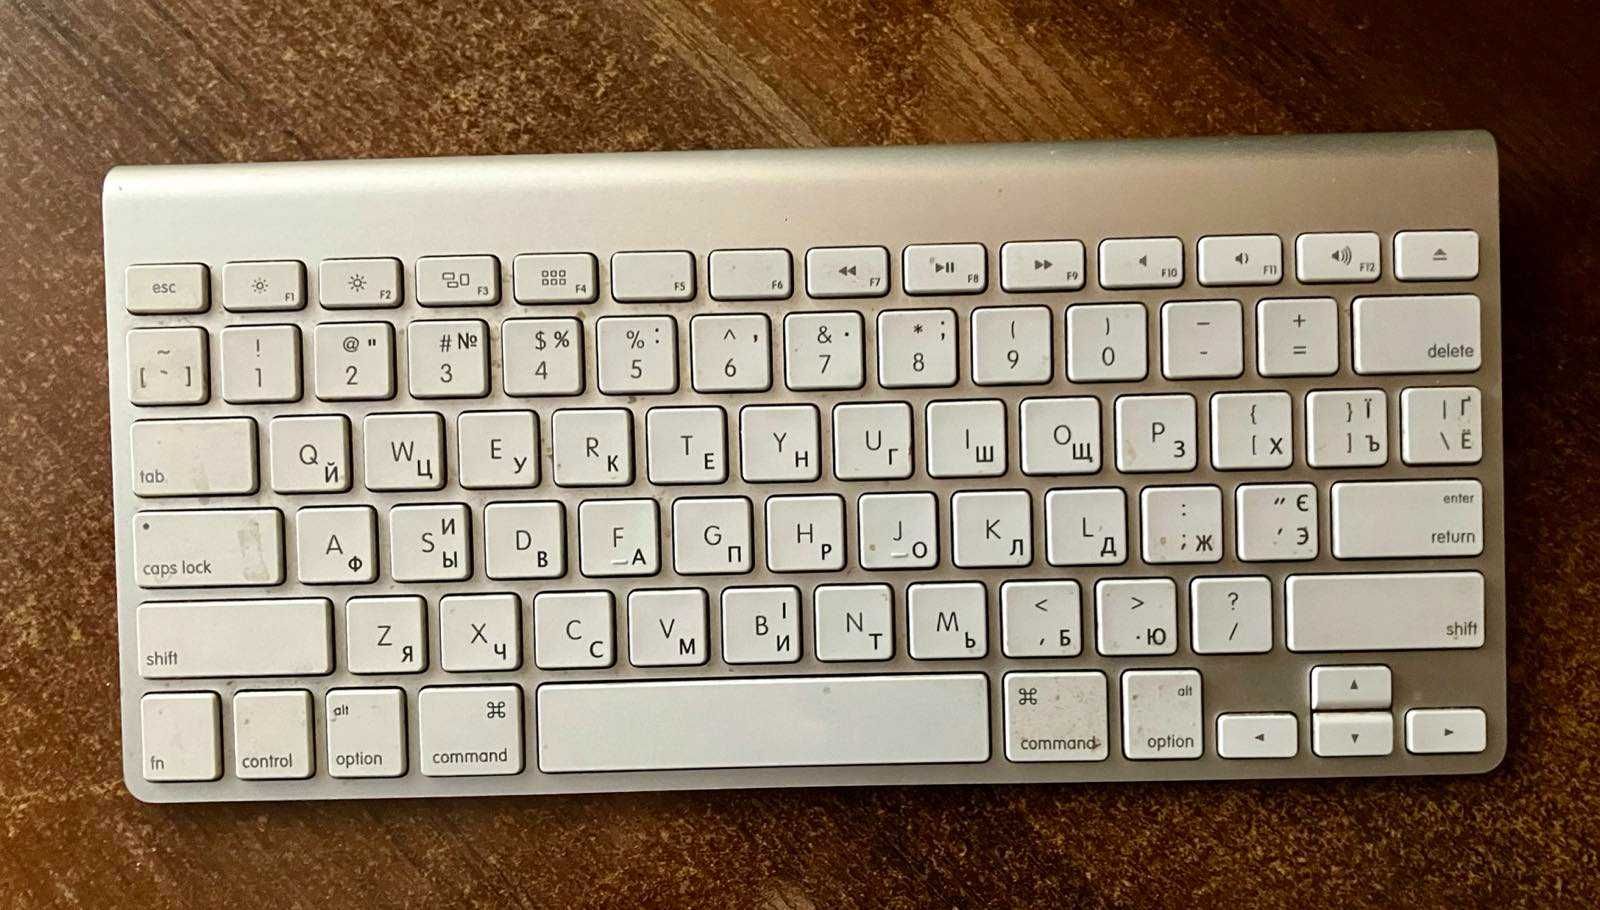 Беспроводная клавиатура Apple А1314 в отличном состоянии, б/у